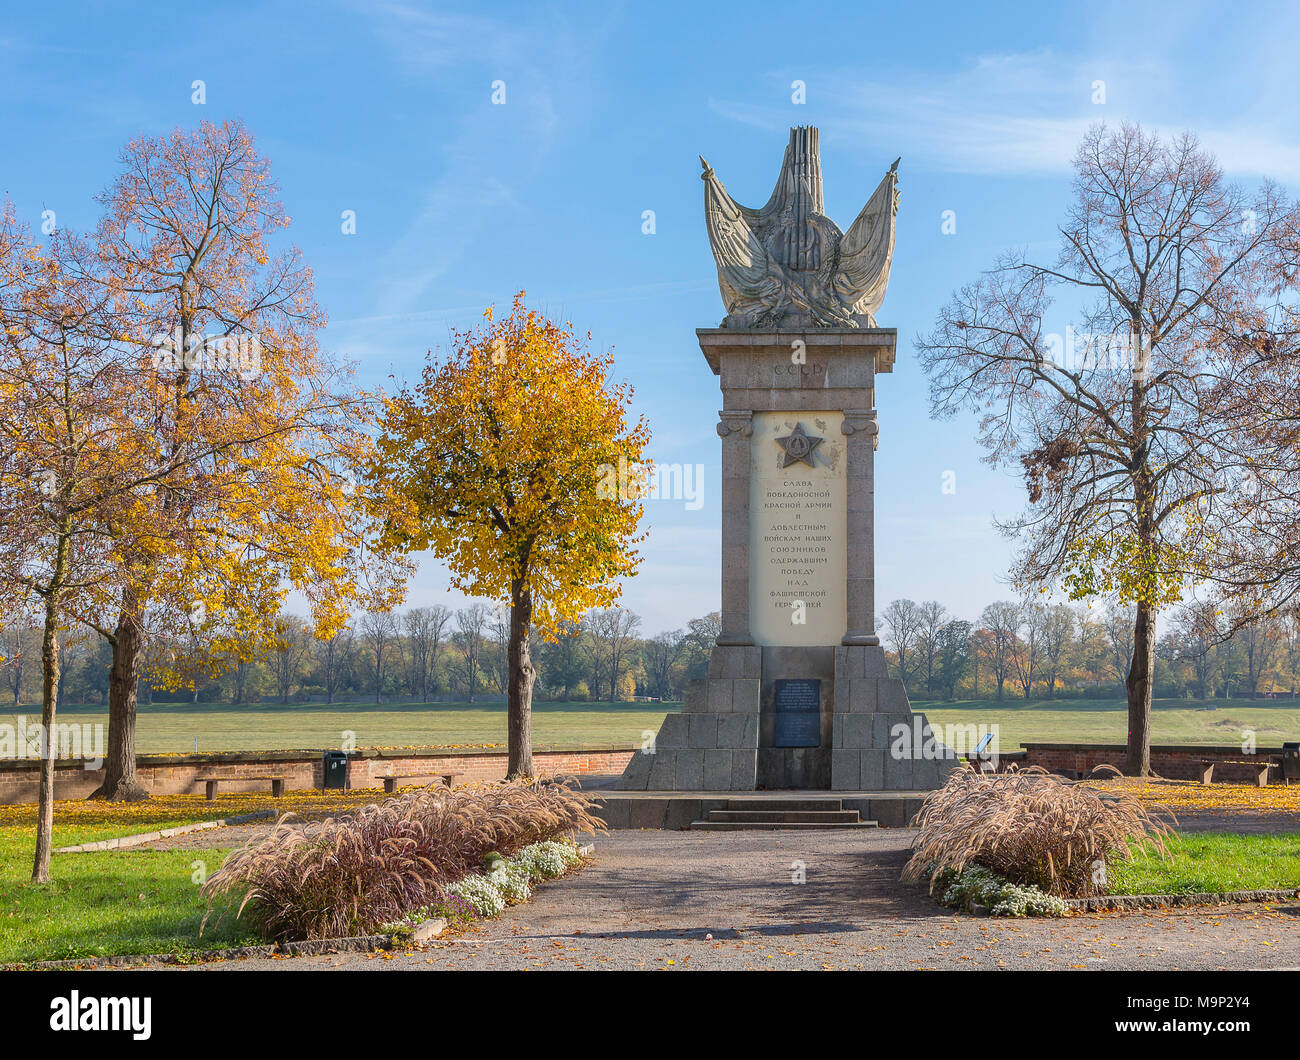 Monumento del Encuentro, monumento soviético recordando el encuentro con las tropas estadounidenses en 1945 sobre el río Elba en Torgau, Sajonia Foto de stock